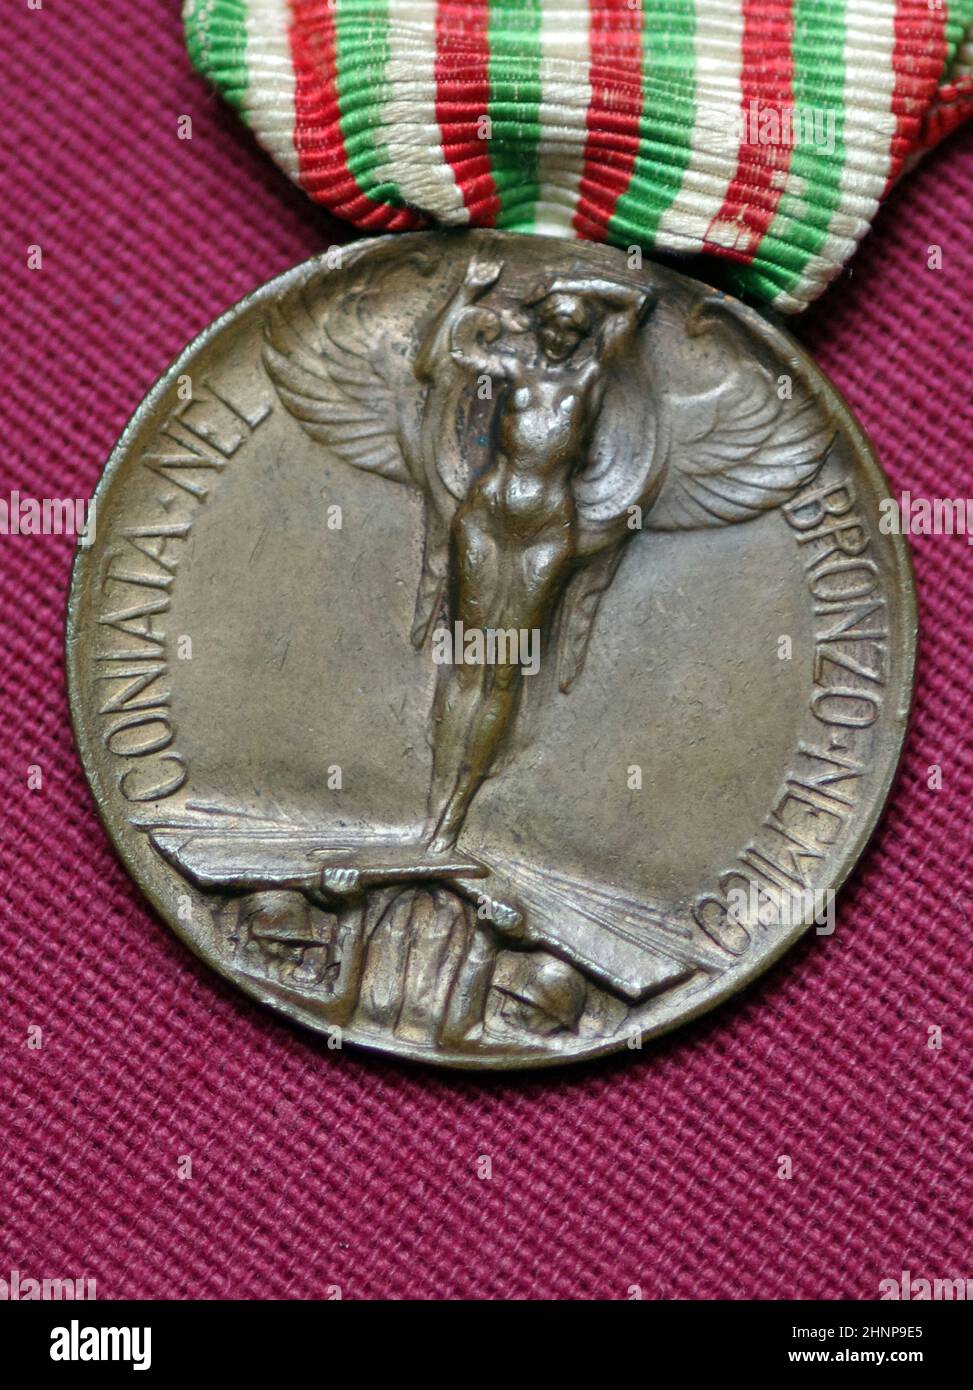 L'italiano prima guerra mondiale 1915-1918 commemorative medaglia di bronzo Foto Stock